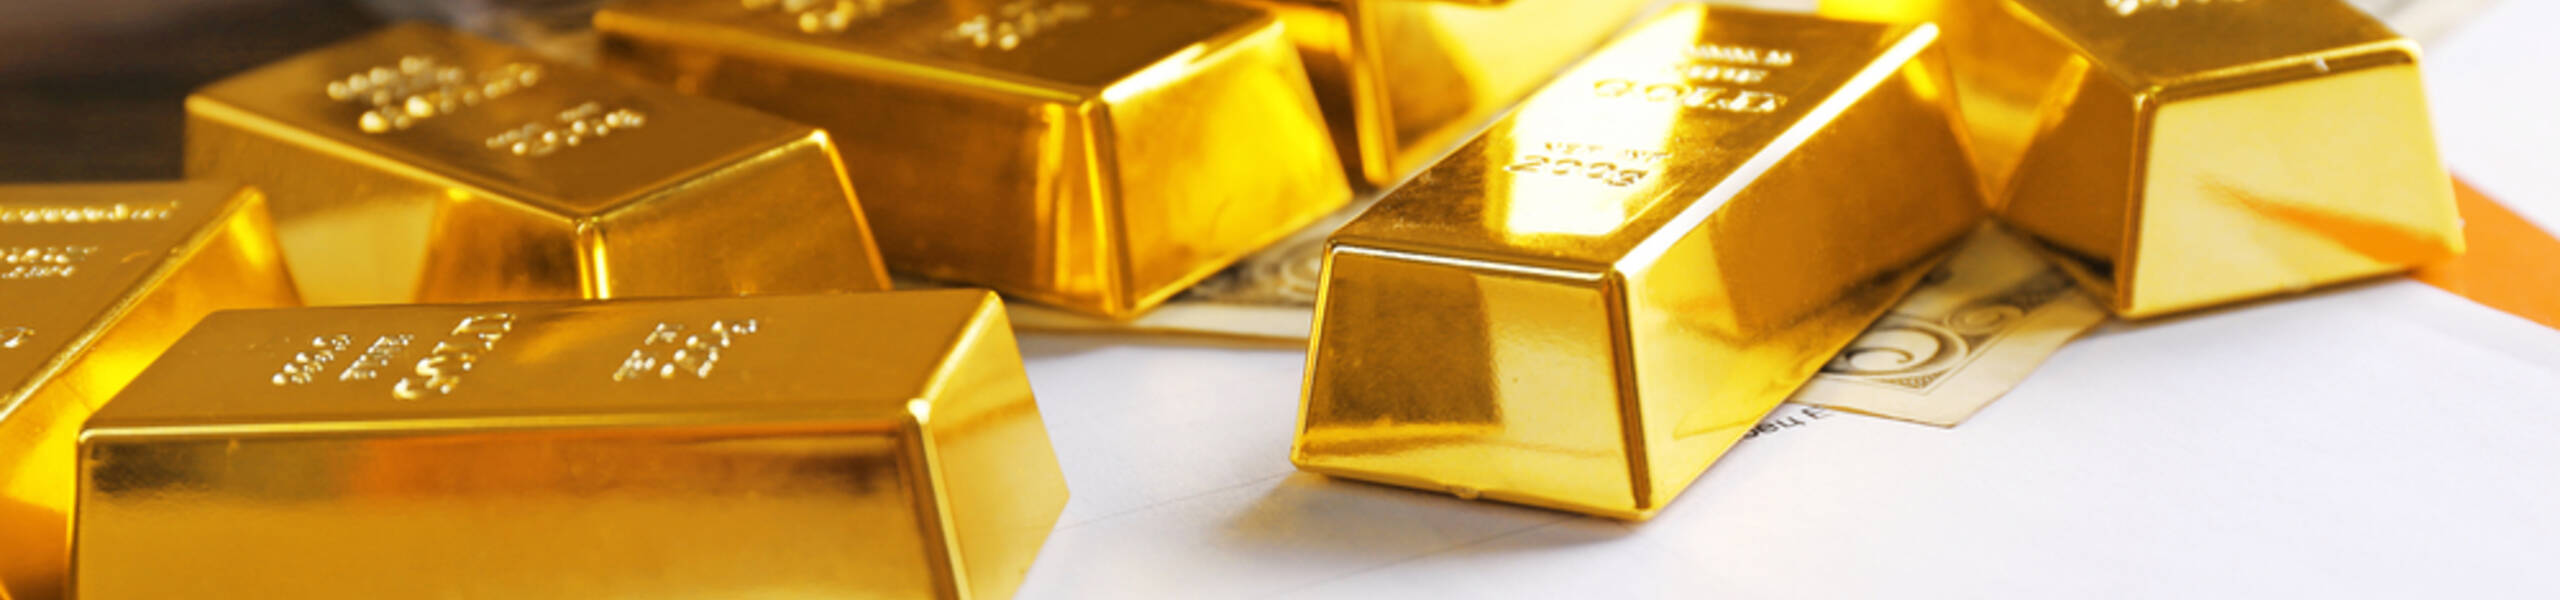 تقرير مُصوّر - الذهب وأسواقه.. وإلى متى ستستمر الأسعار في الارتفاع؟